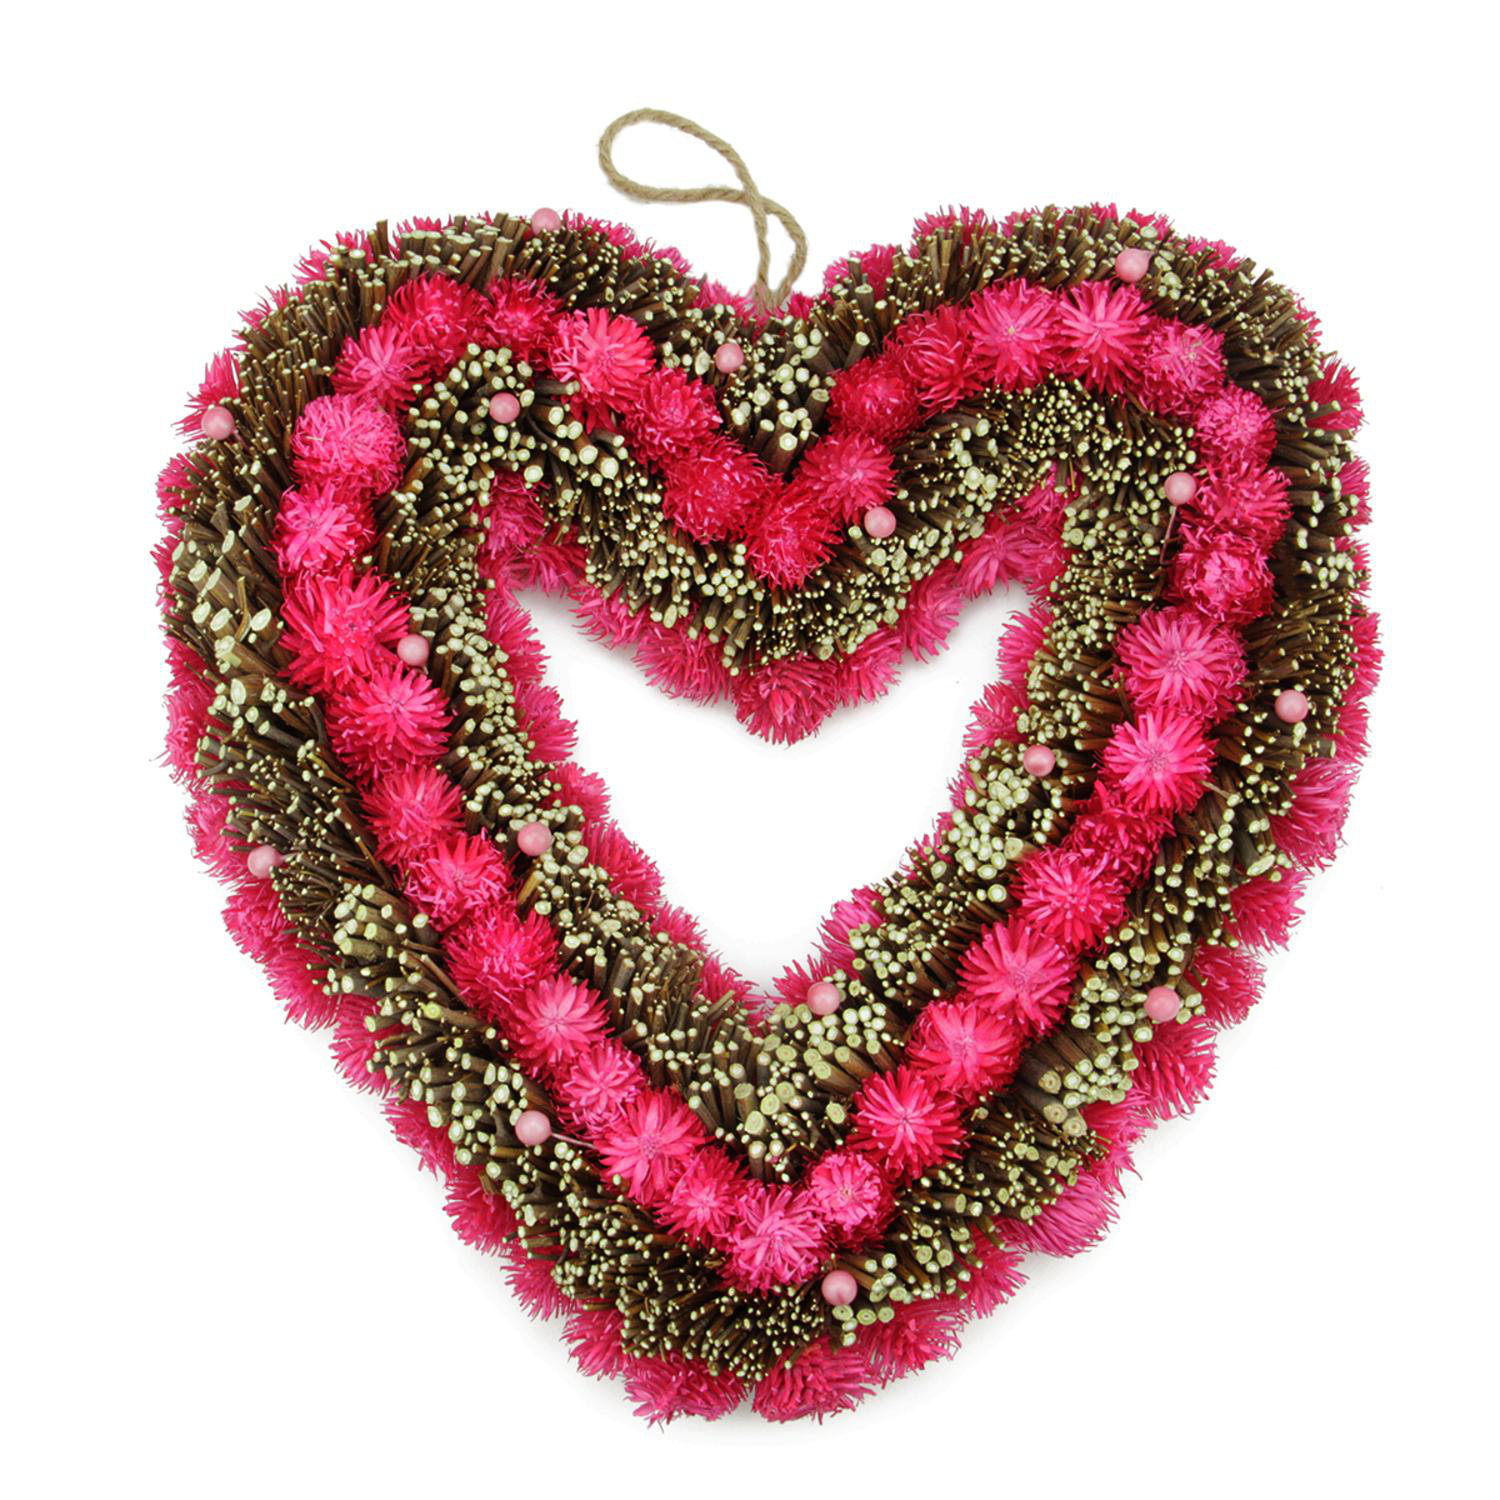 Valentine Wreath Decoration Red Tinsel Heart Wreath Artificial Heart Shaped Wreath Valentine Hanging Door Wreath for Valentines' Day Wedding